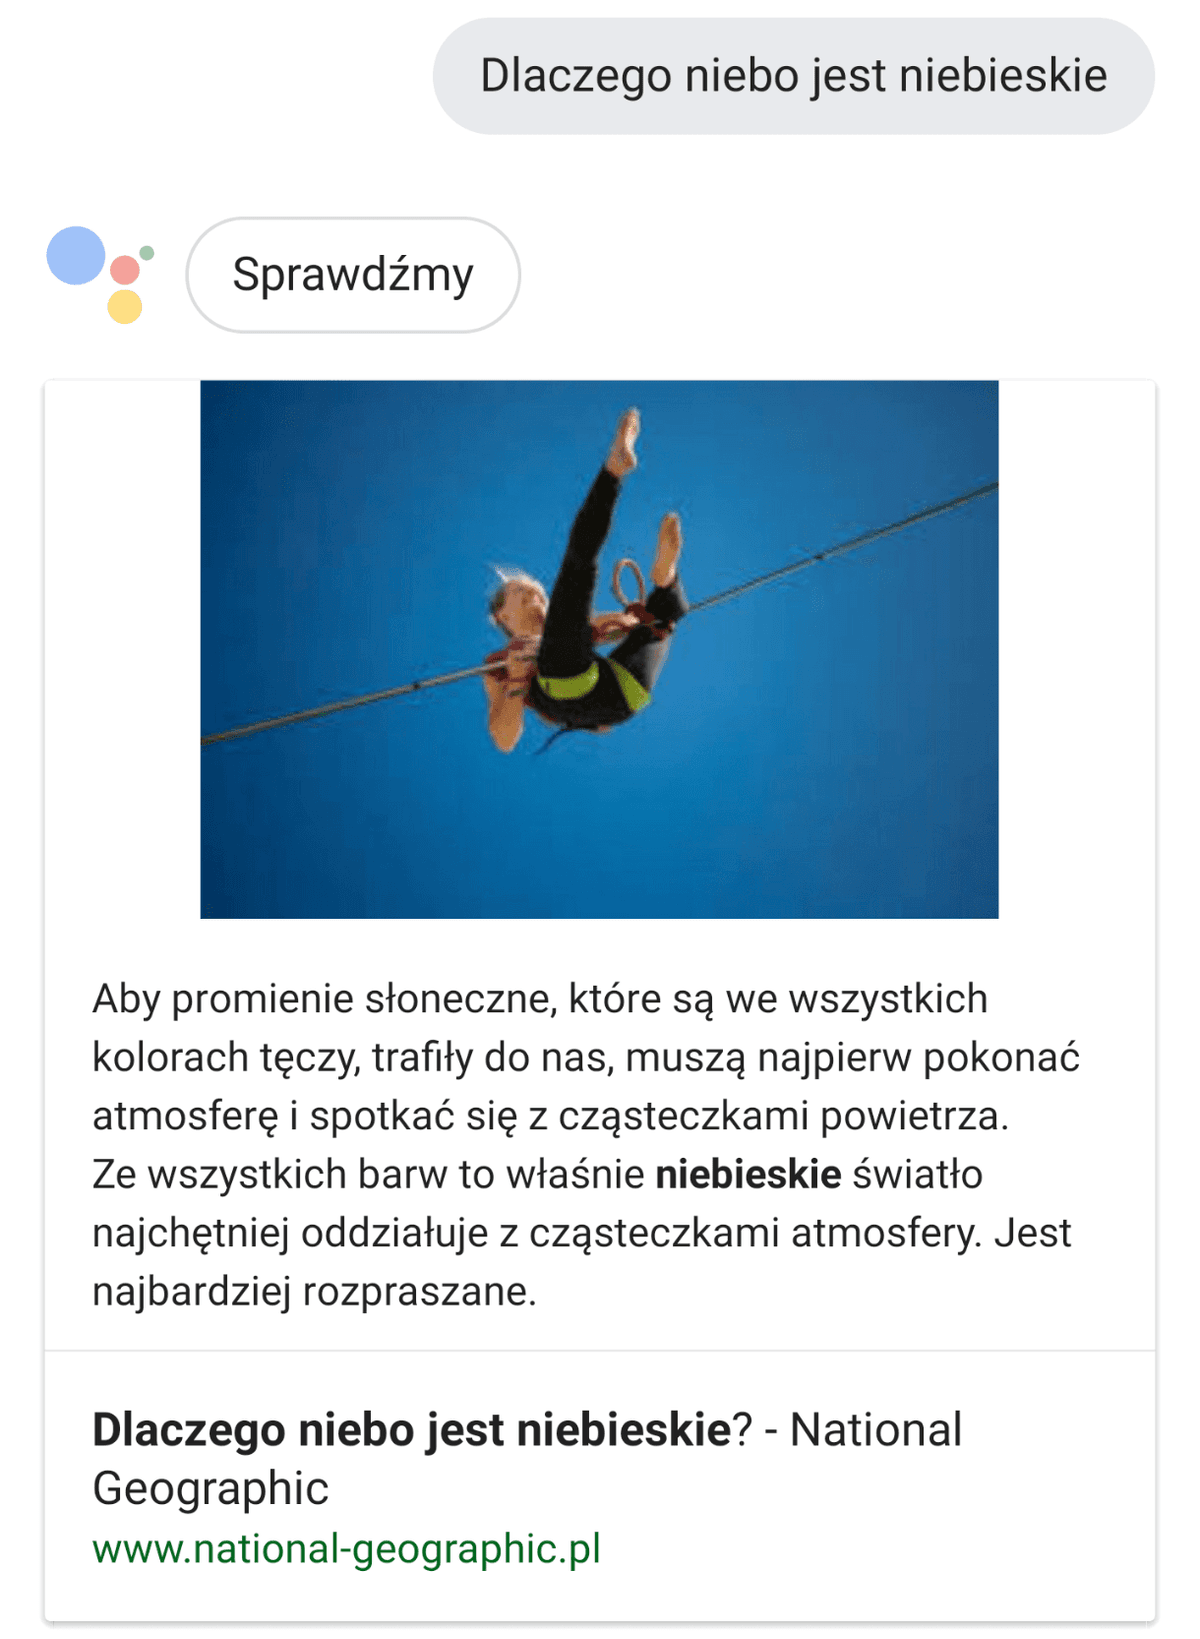 Jak działa Asystent Google w języku polskim? class="wp-image-813575" title="Jak działa Asystent Google w języku polskim?" 